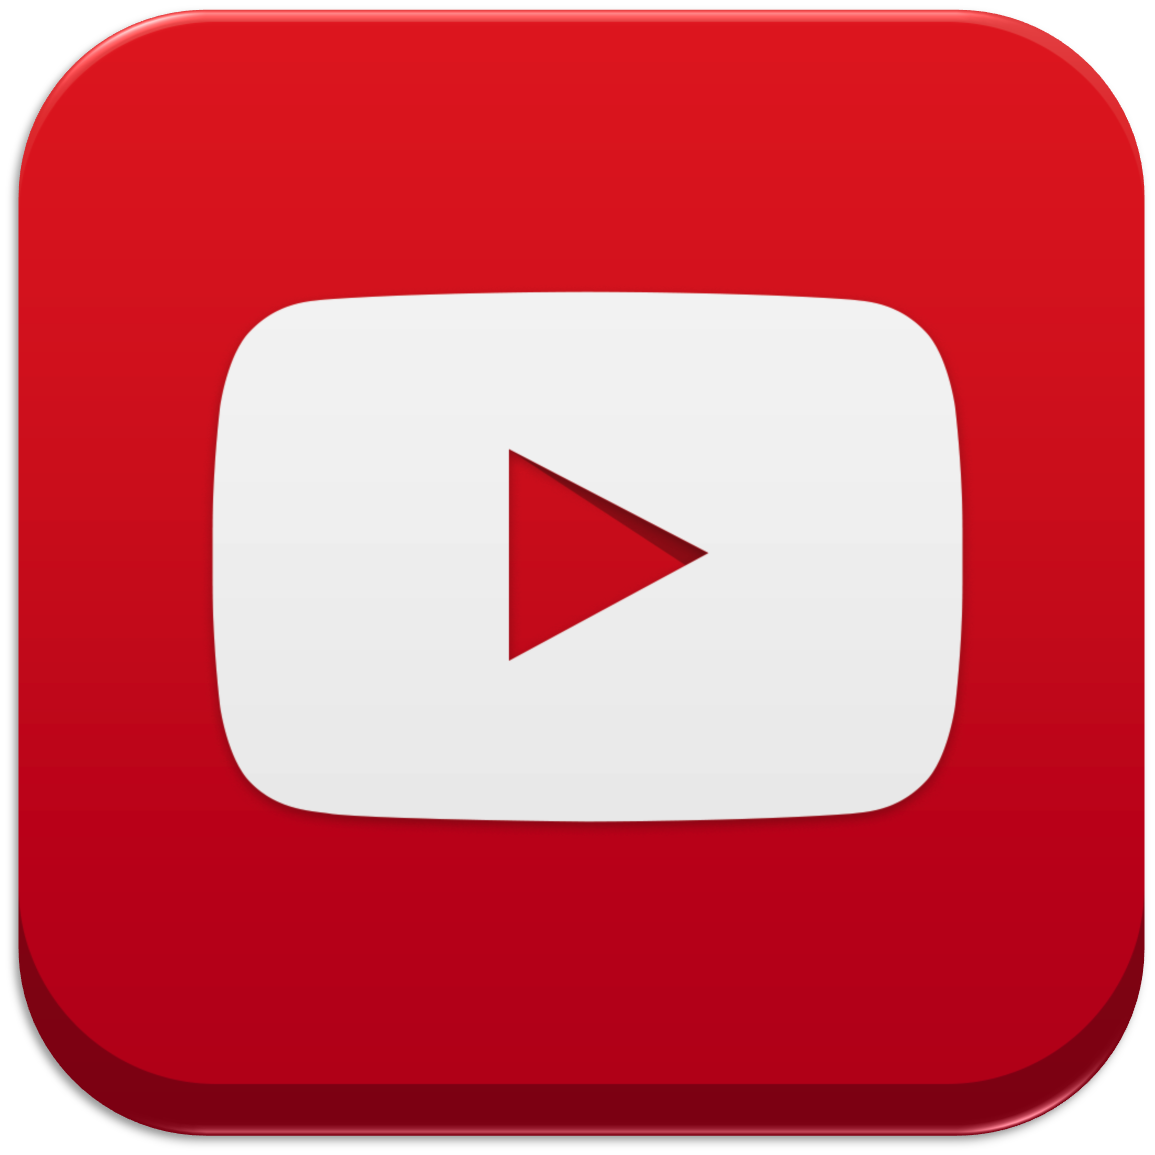 Fajarv: Youtube Logo Png File